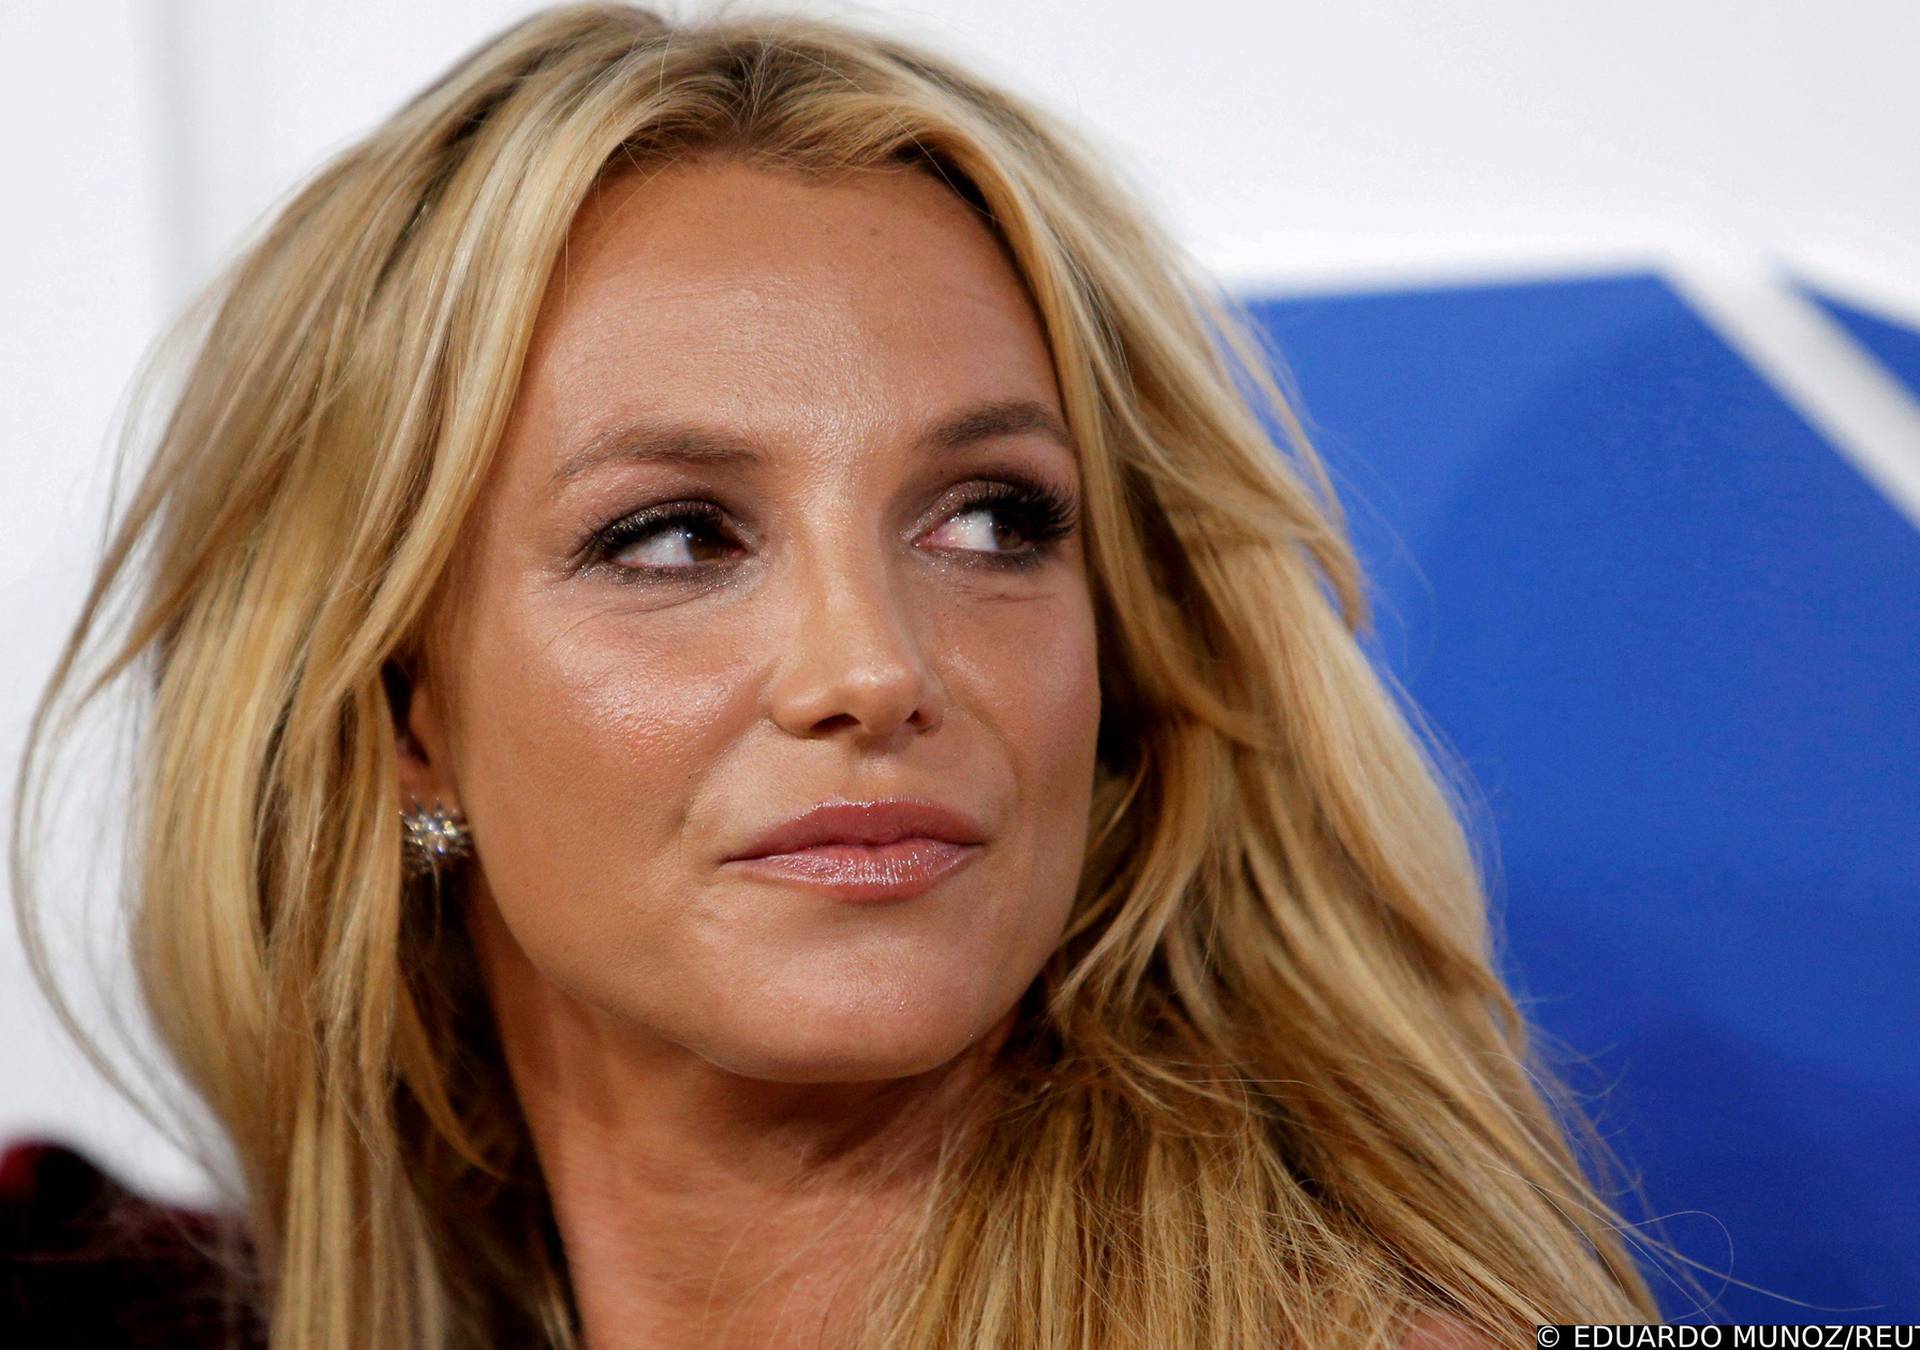 Nezaposlenom bivšem mužu Britney Spears platili su 15 milijuna kuna za intervju o njoj